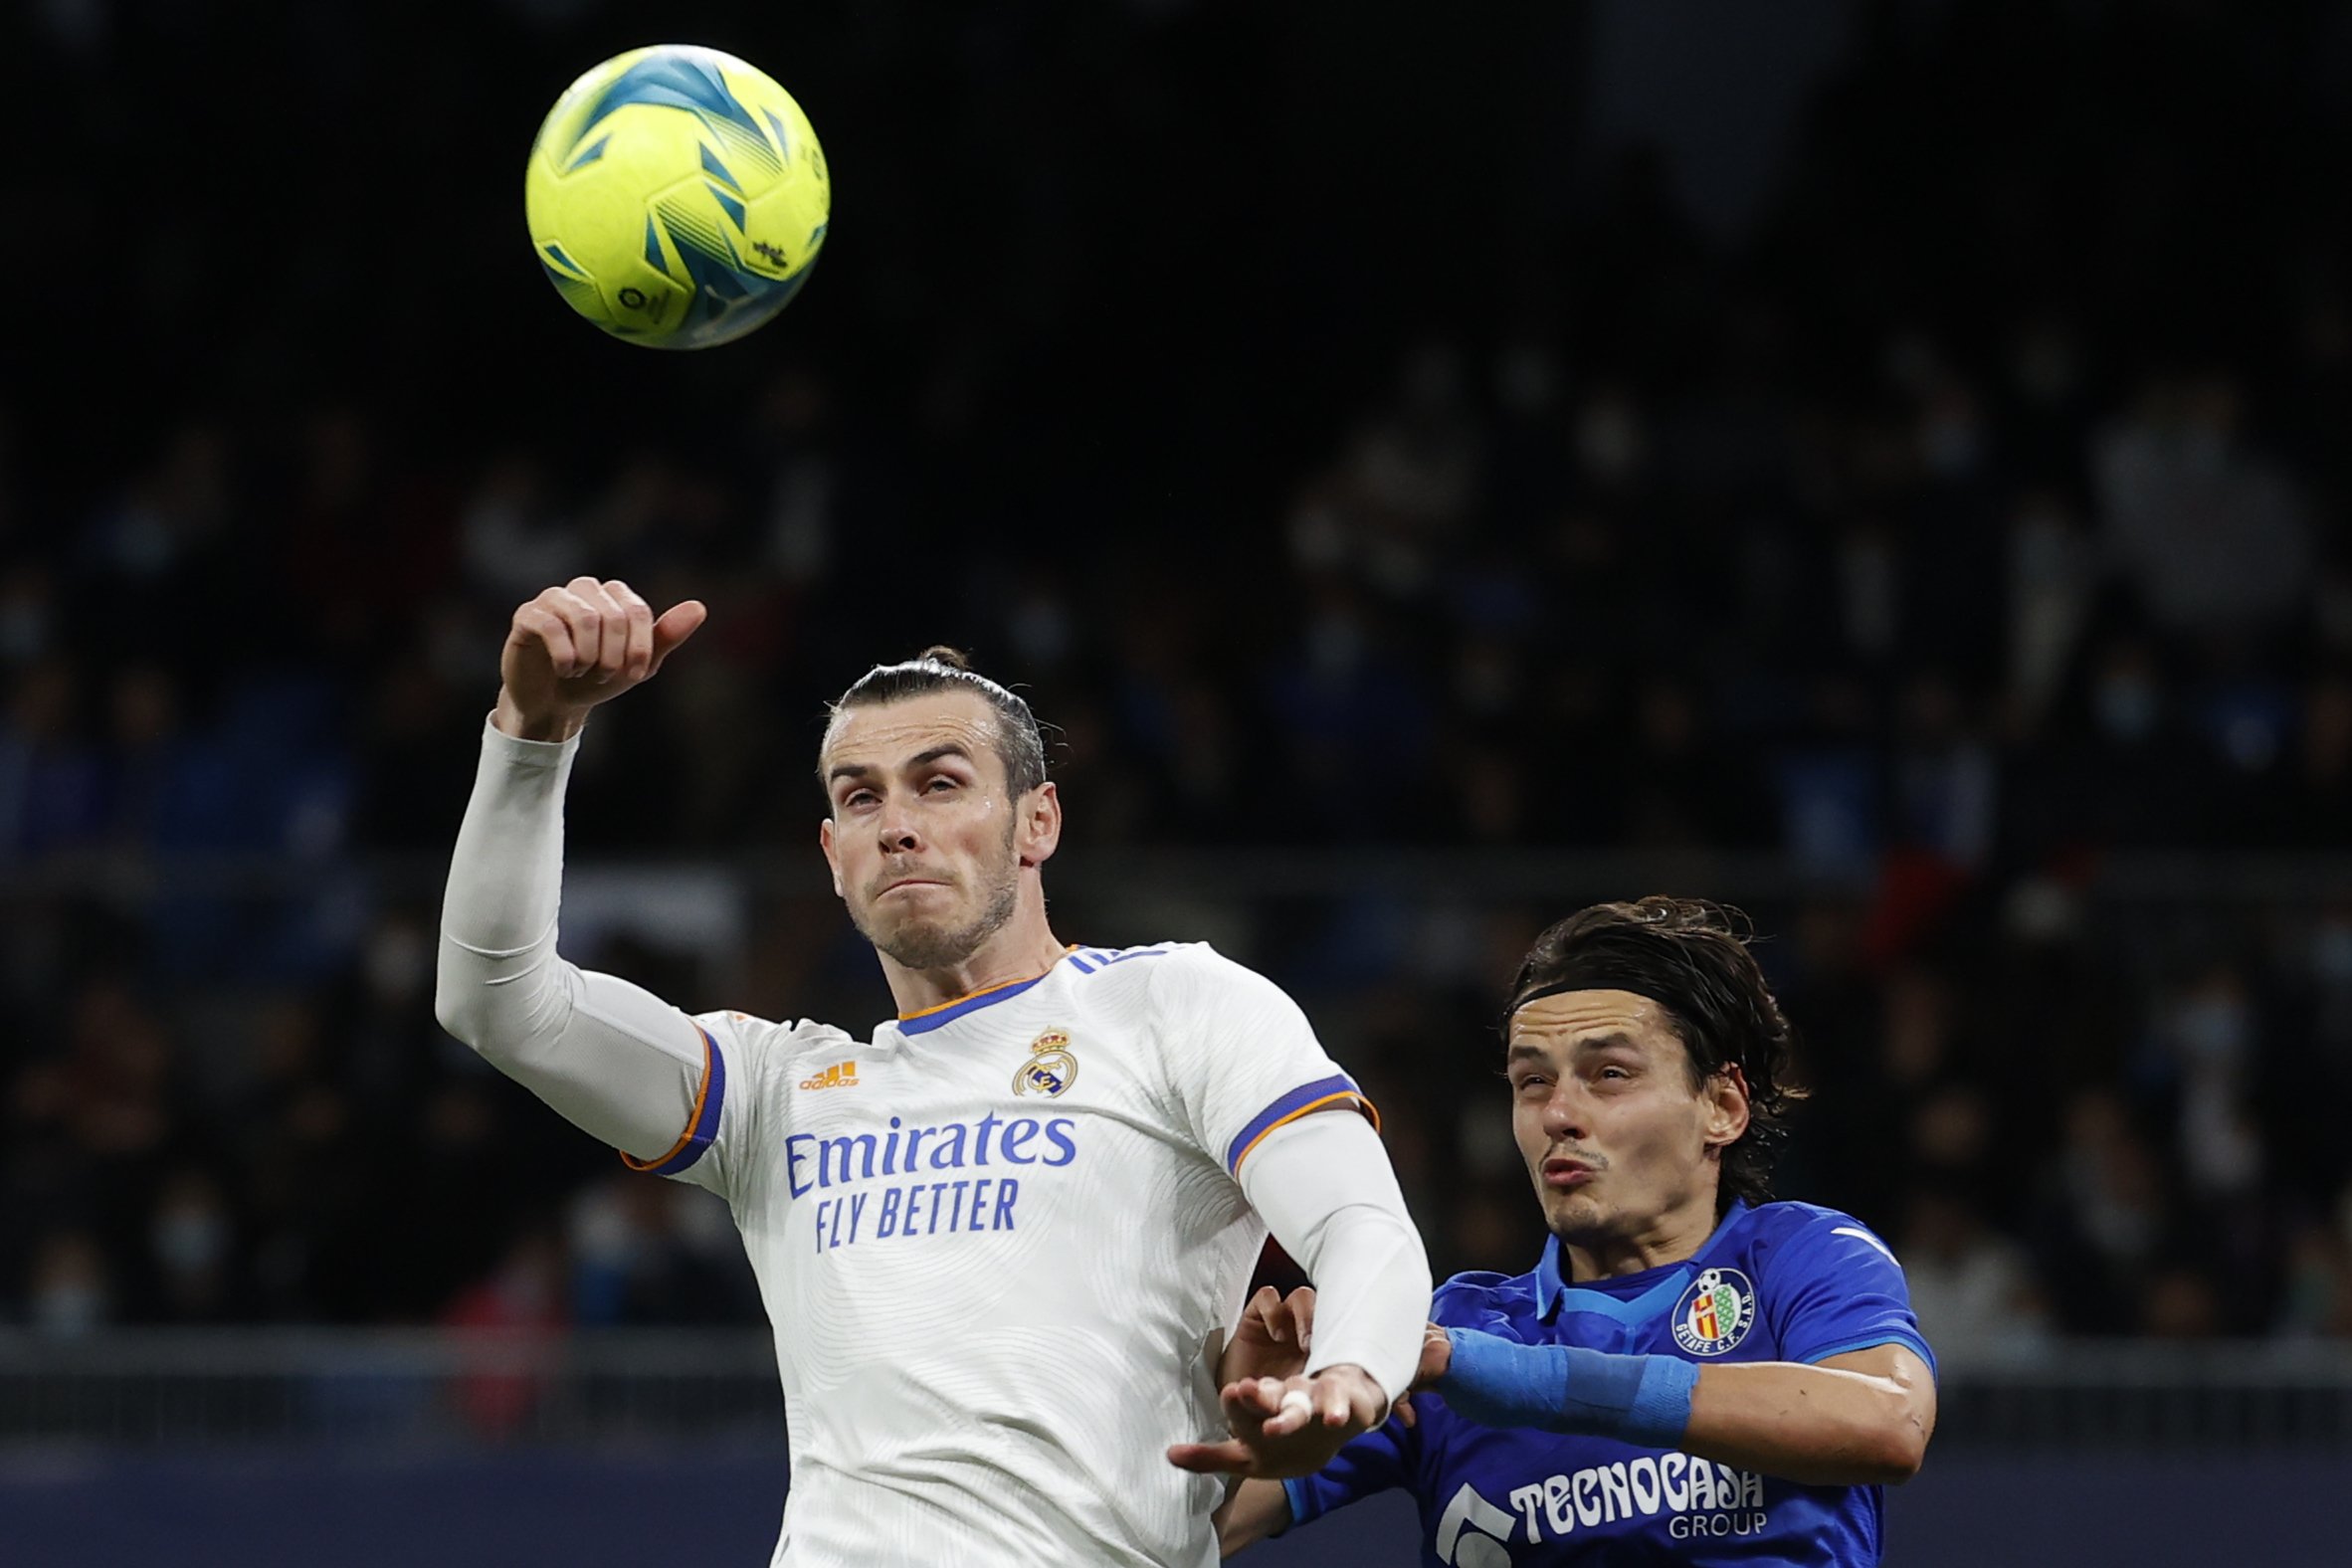 Gir total amb Bale: Florentino Pérez intervé i arriba a un acord que Ancelotti accepta